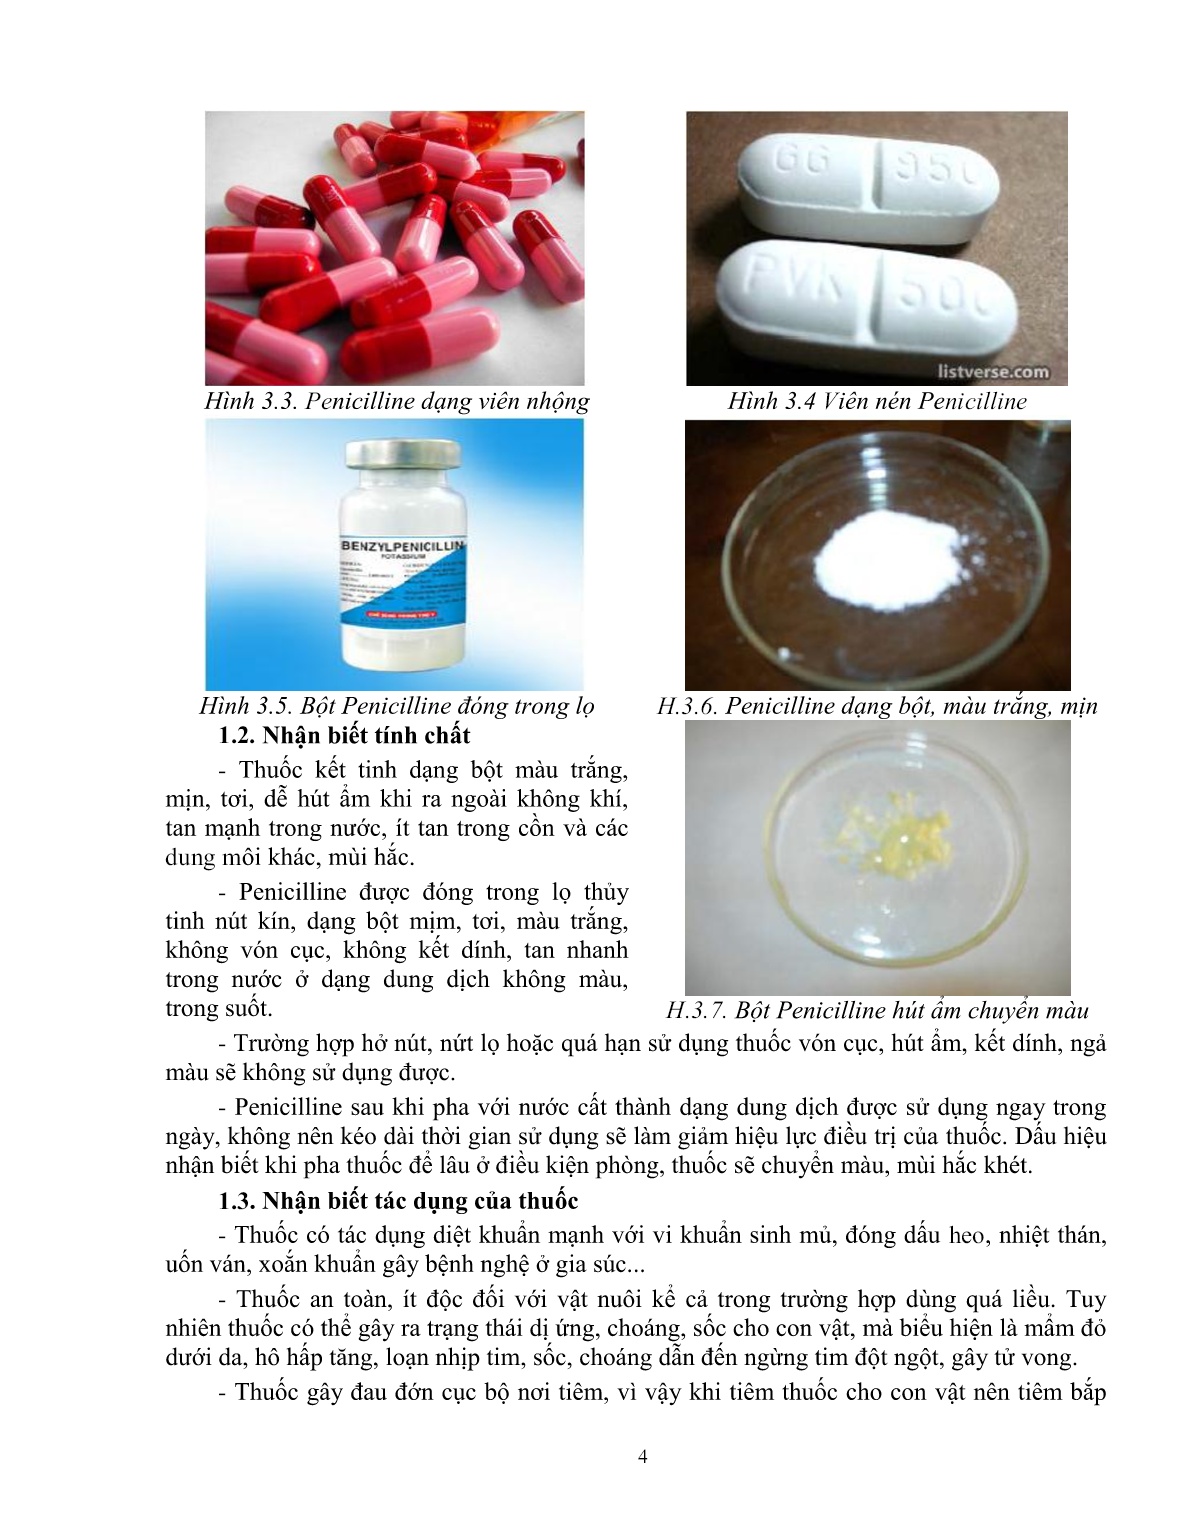 Giáo trình mô đun Xác định kháng sinh thông thường (Trình độ: Đào tạo dưới 3 tháng) trang 5